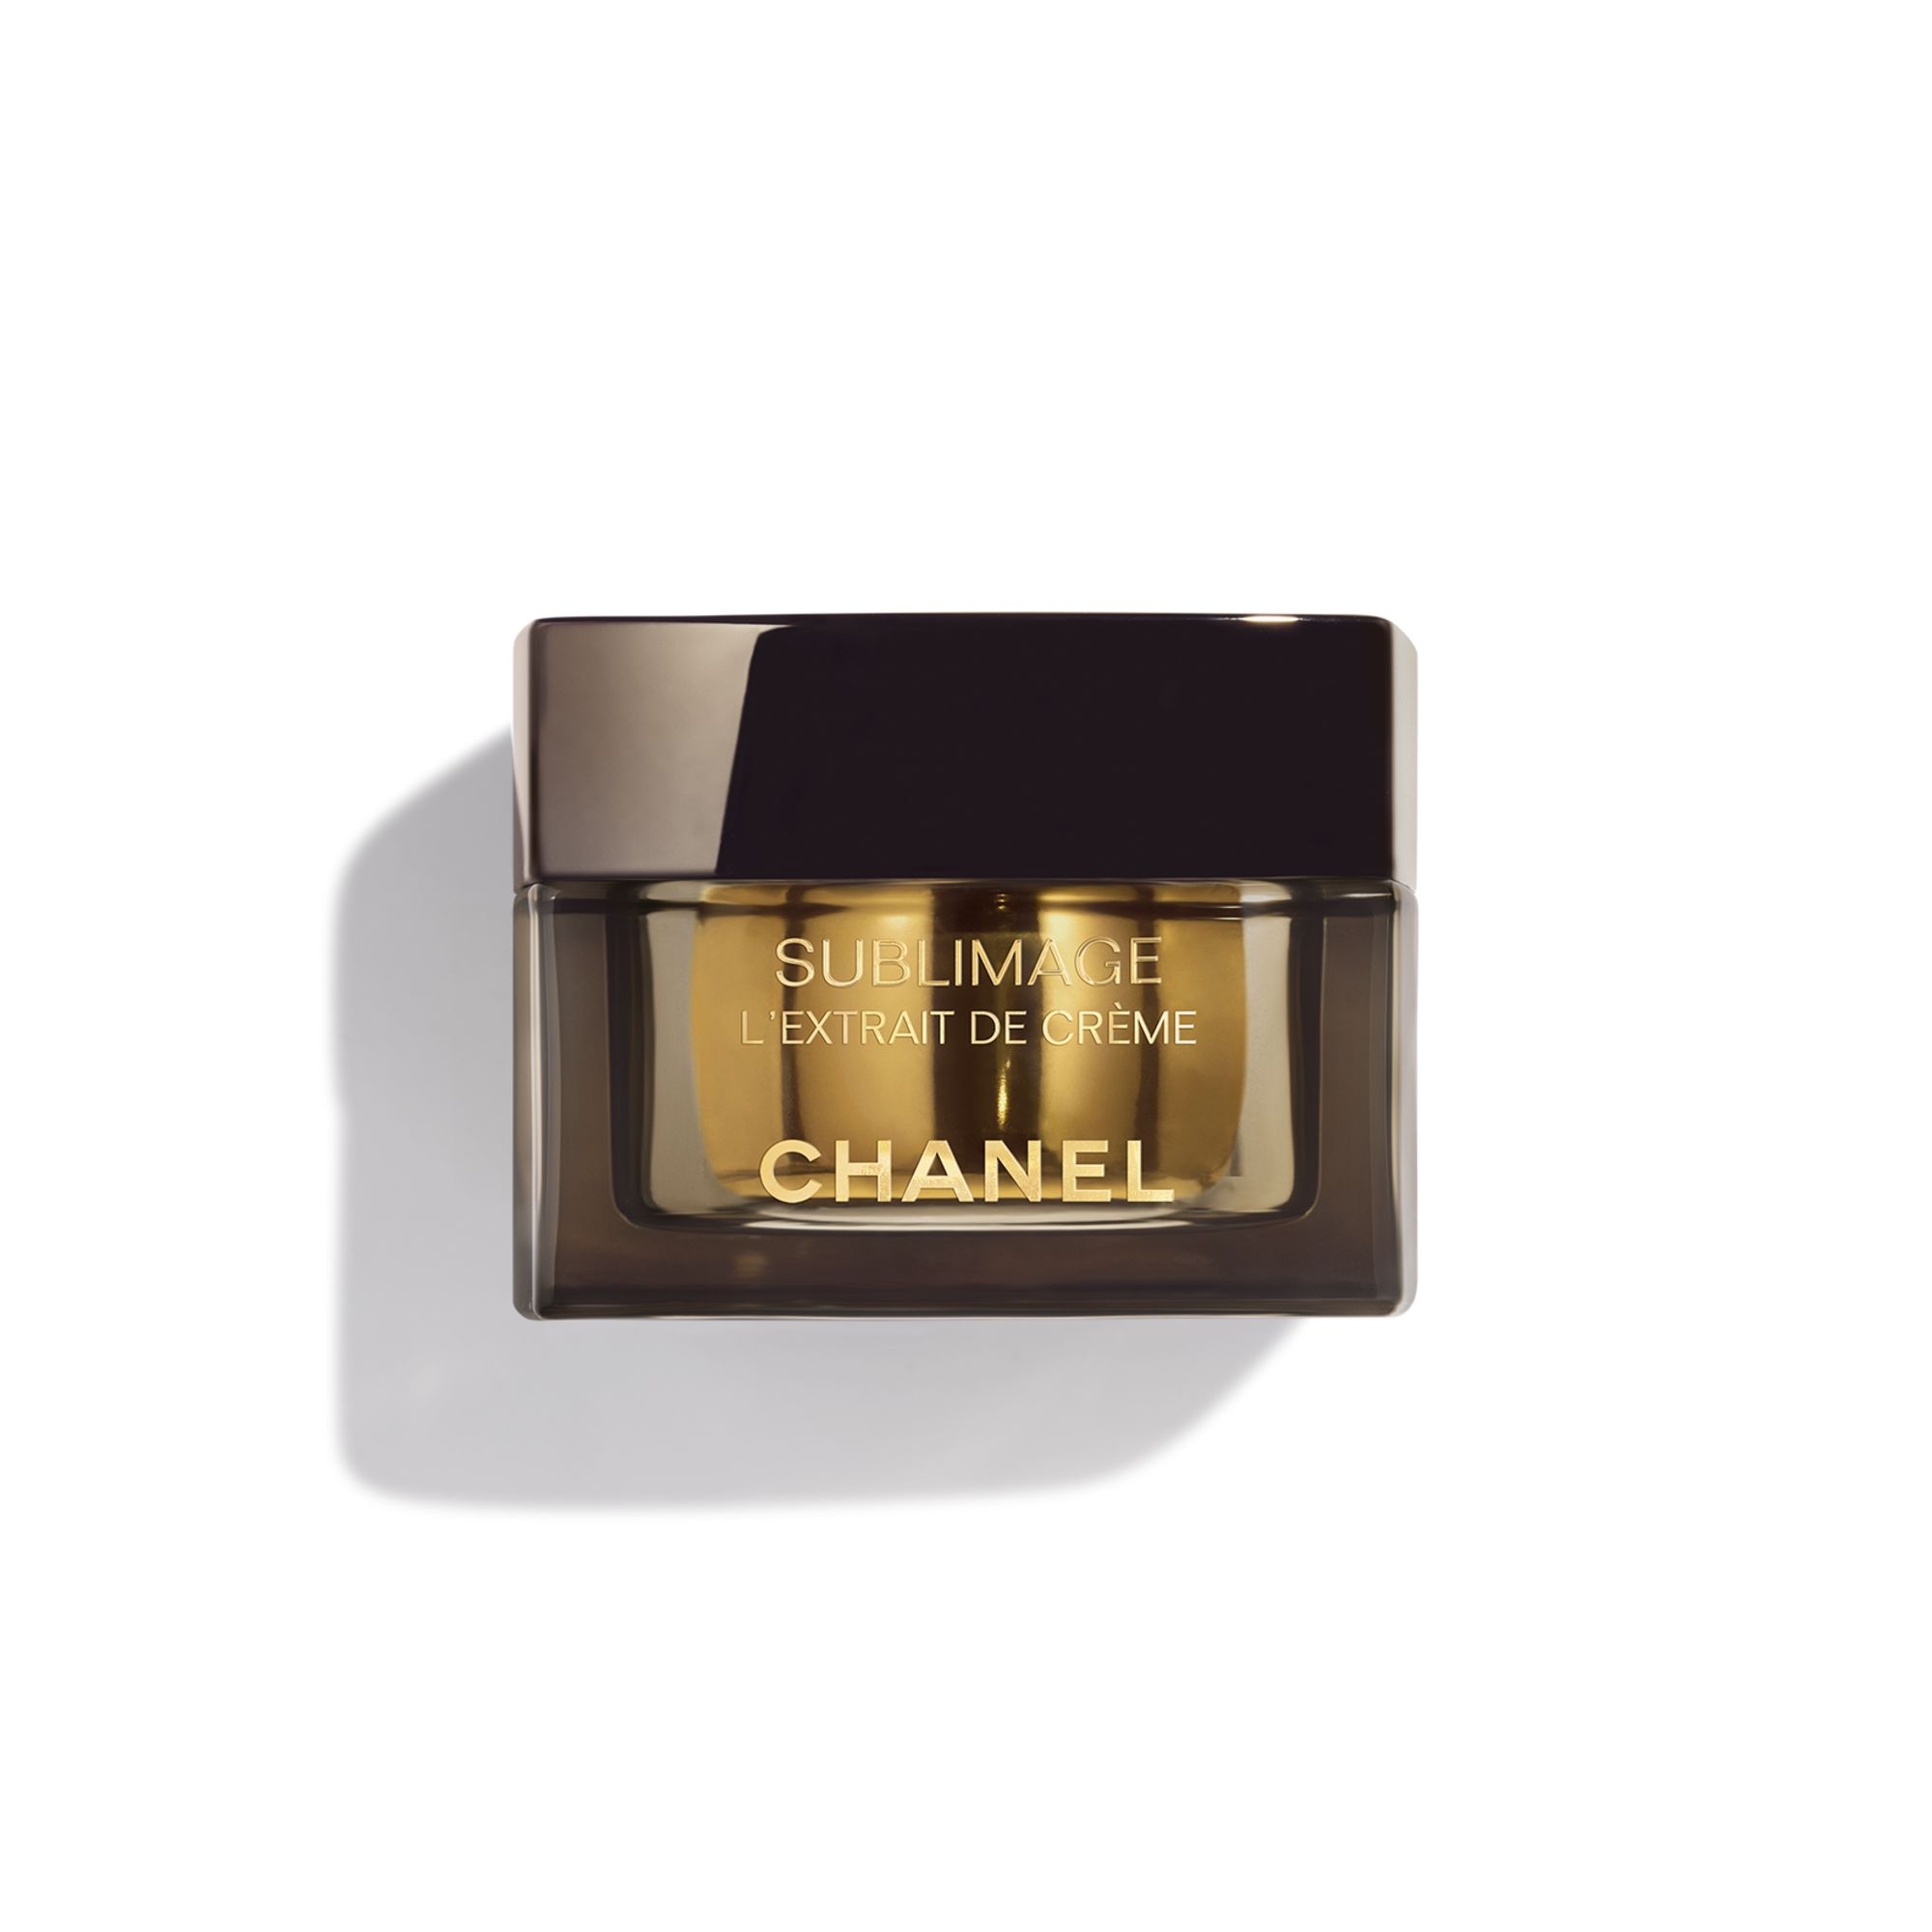 Chanel Sublimage L'Extrait De Creme Ultimate Regeneration And